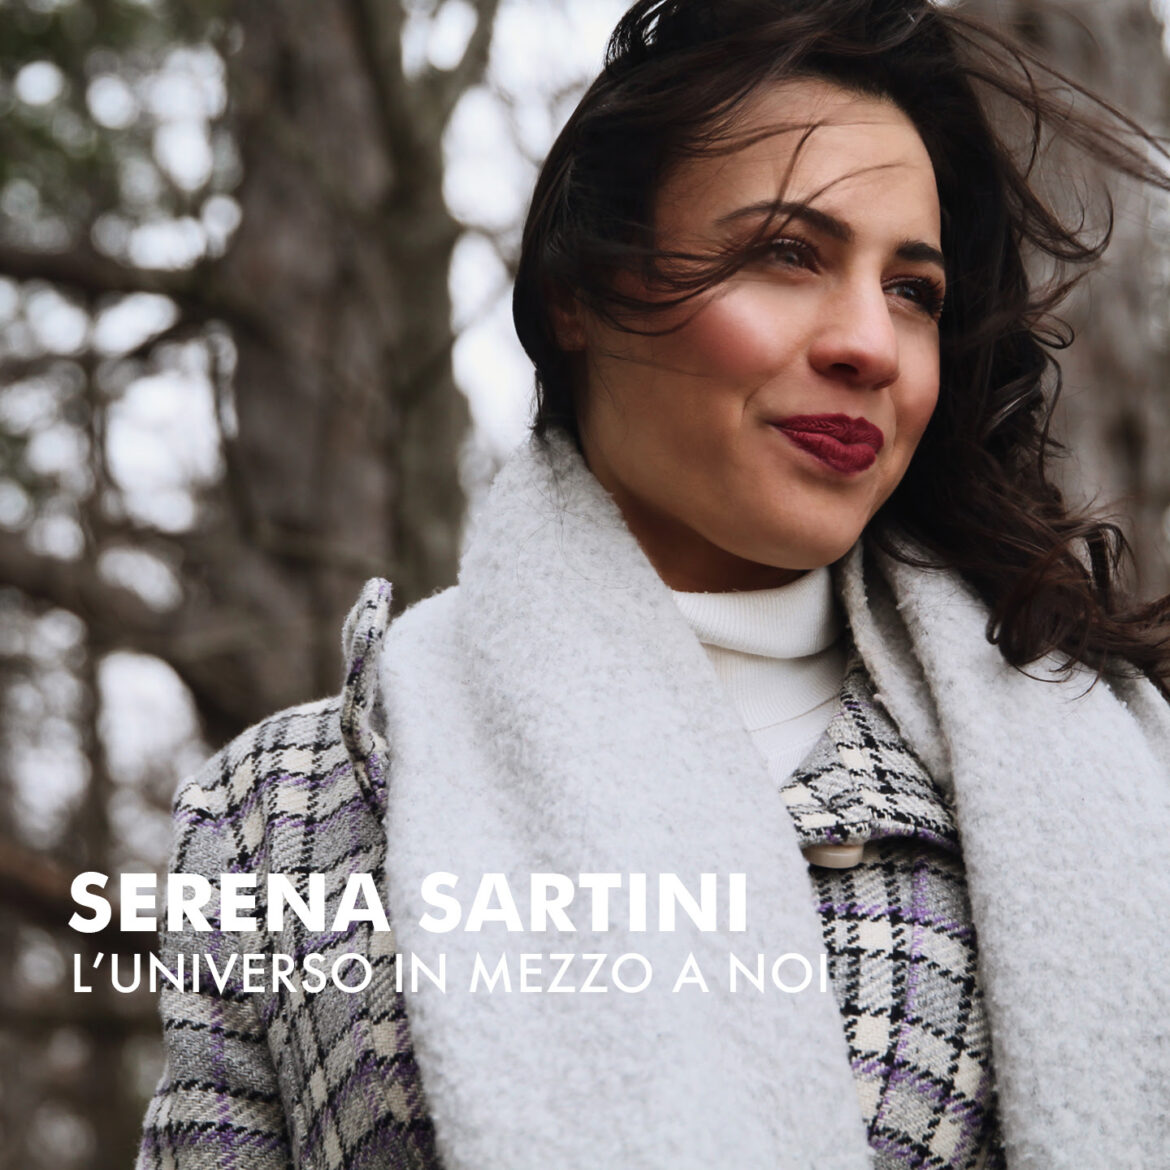 SERENA SARTINI pubblica il suo brano d’esordio, “L’UNIVERSO IN MEZZO A NOI” sulla leggenda delle Fiamme Gemelle